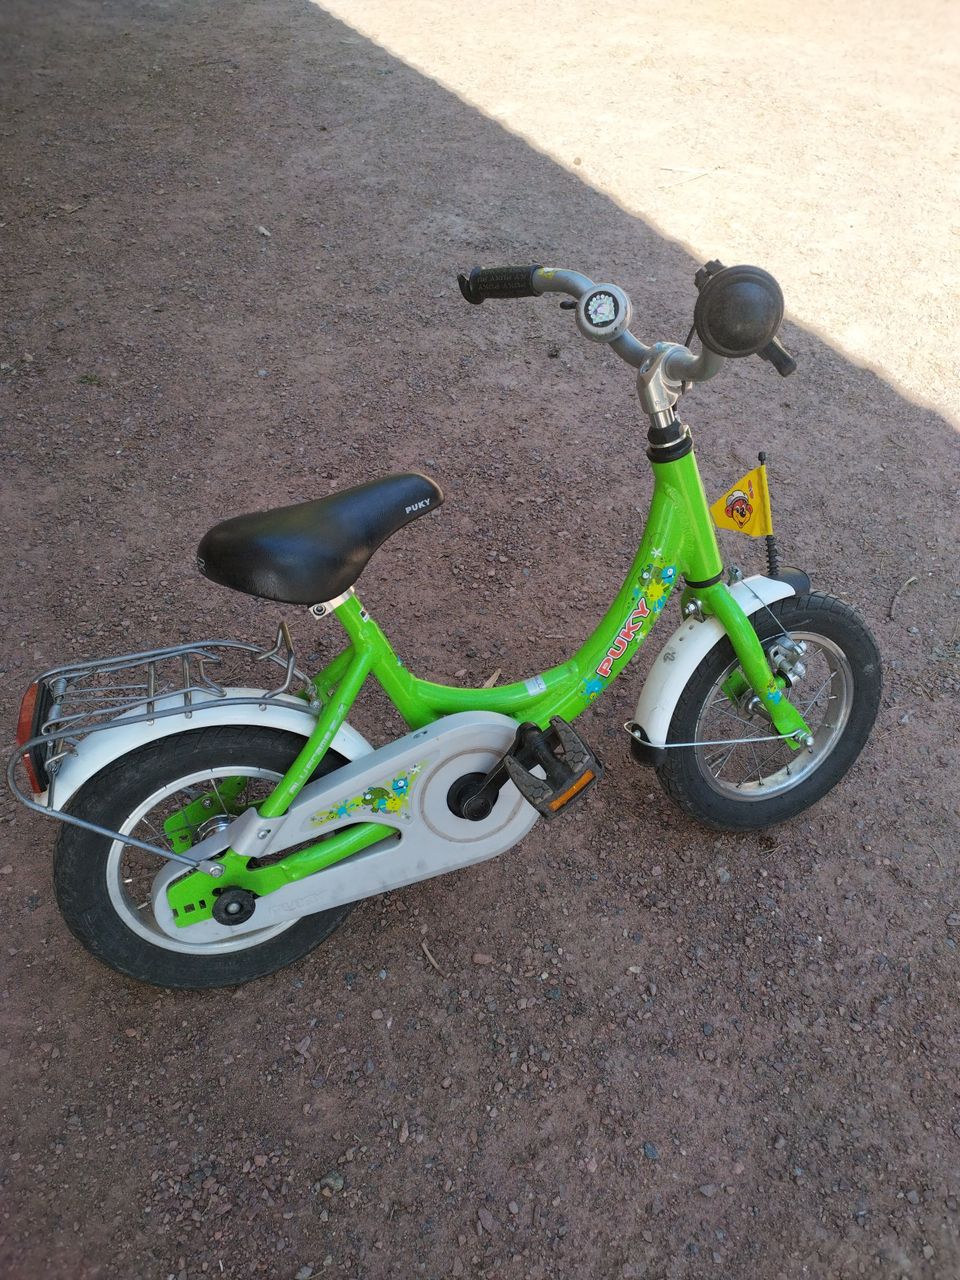 Myydään Puky 12" lastenpyörä väri Kiwi